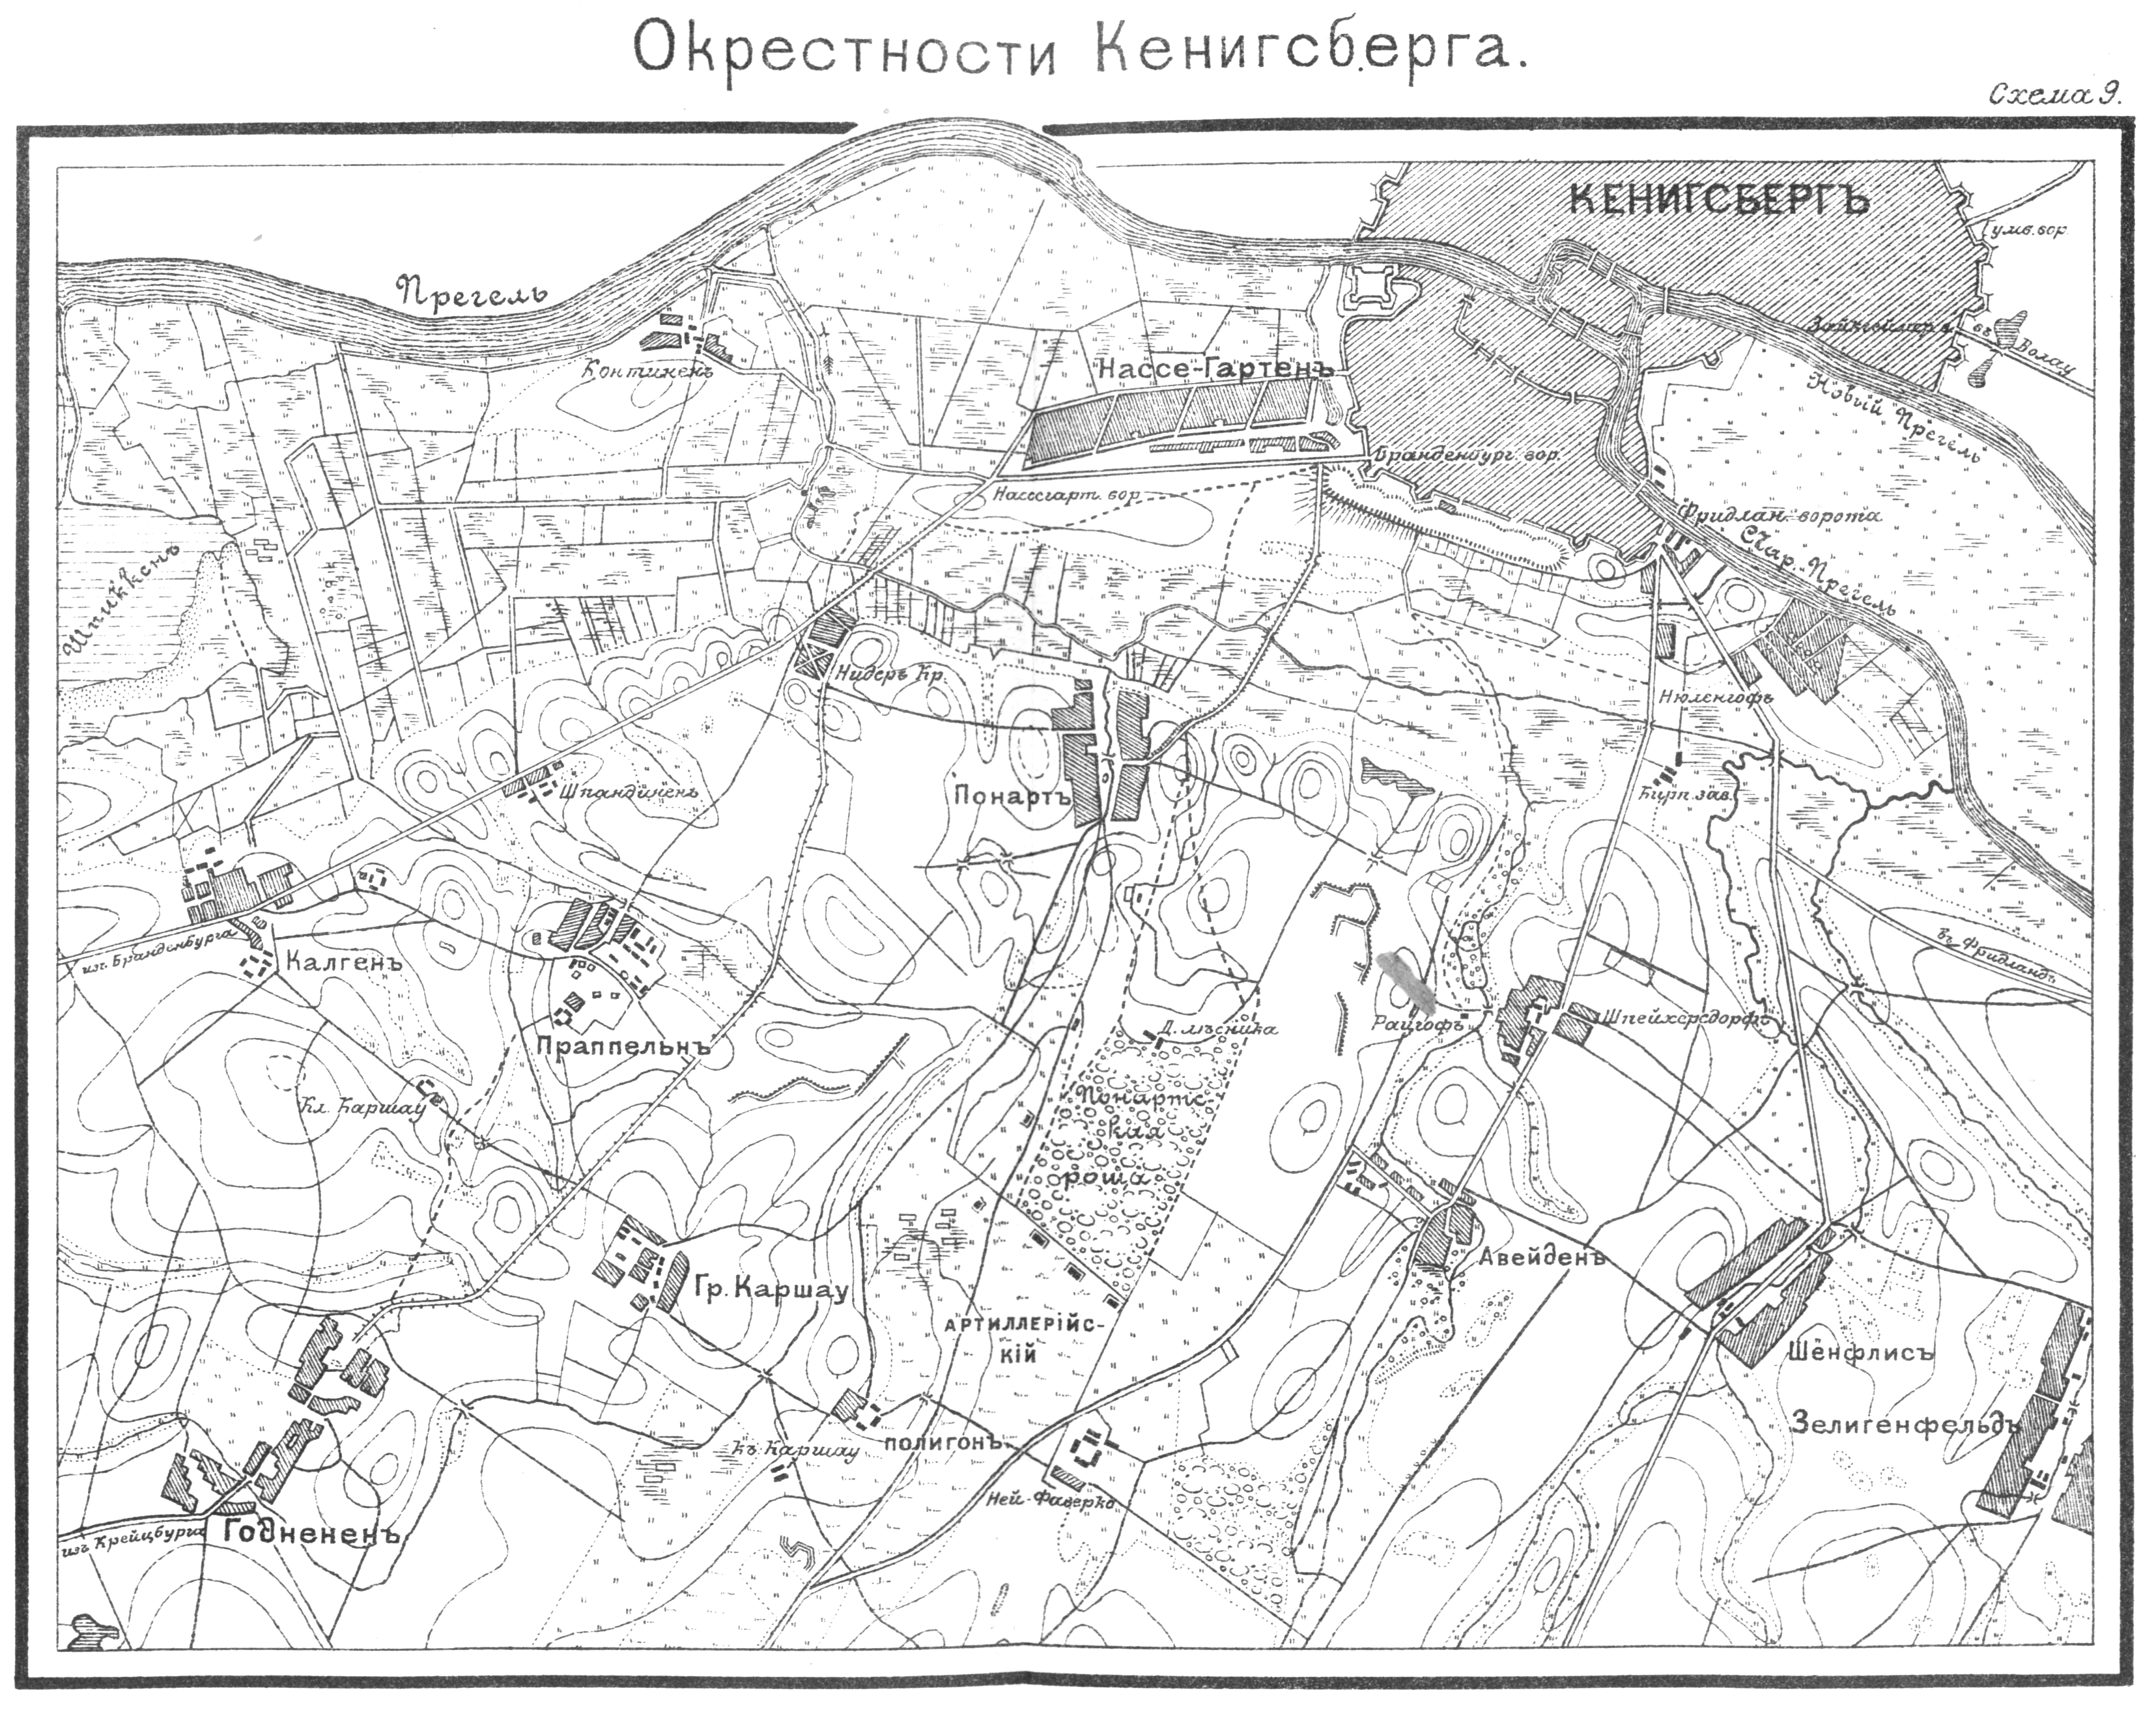 Подпишите на карте город кенигсберг. Карта Кенигсберга в 1945 году. Карта Кёнигсберга до войны. Карта древнего Кенигсберга. Карта старого Кенигсберга.